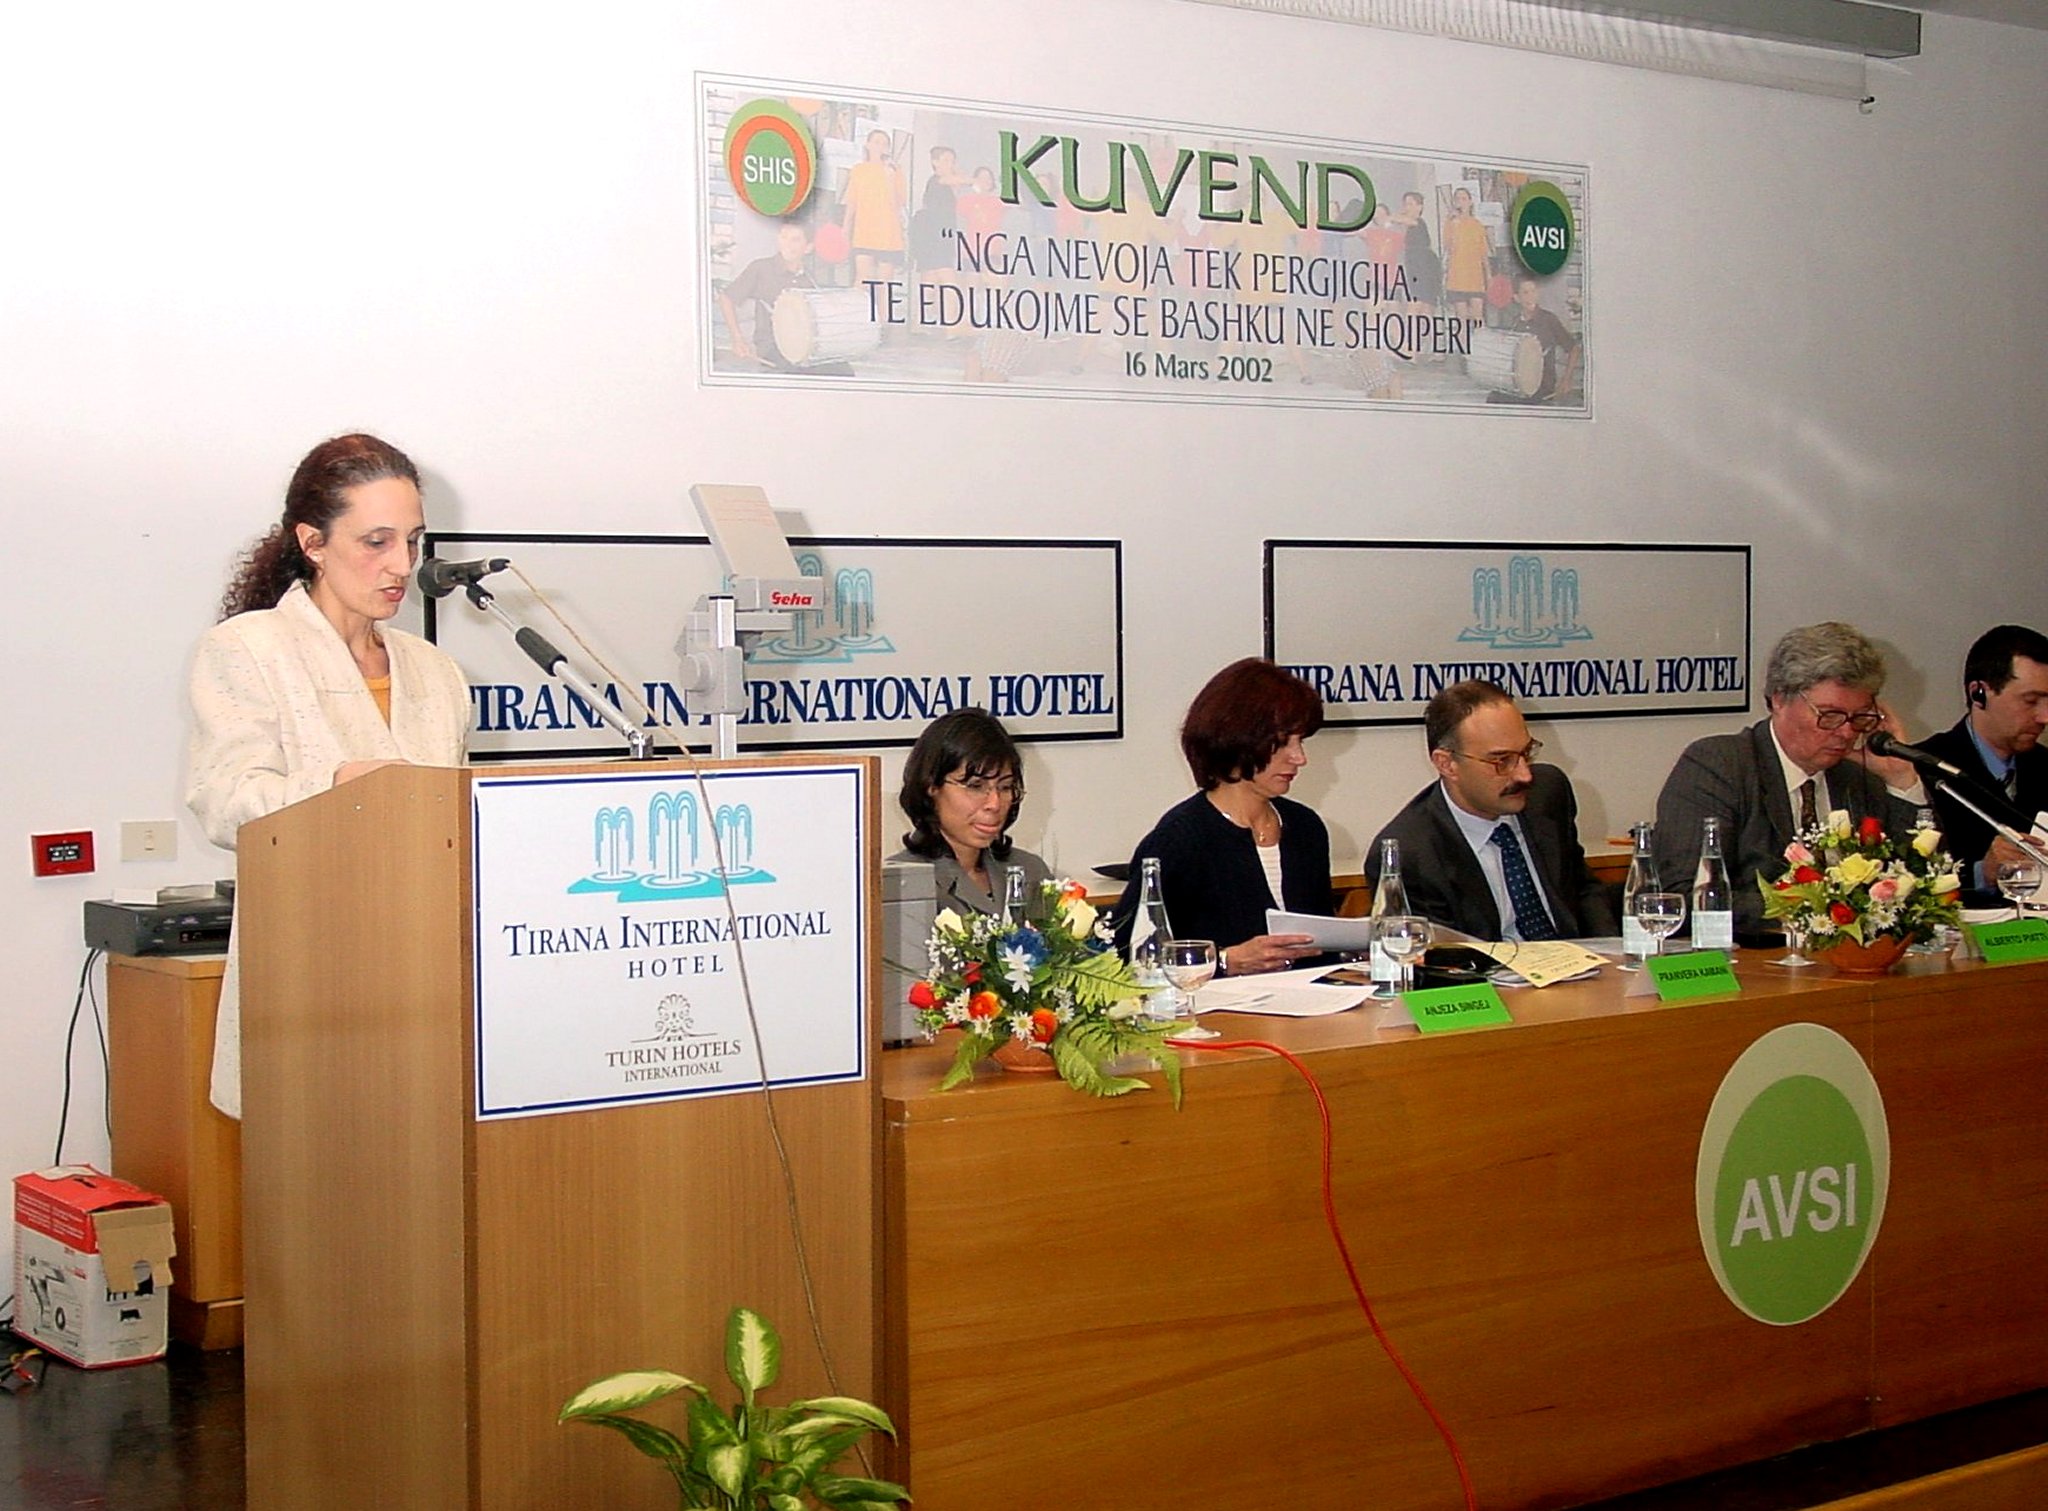 Marzo 2002 ñ Tirana, Albania: Convegno pubblico sullíeducazione a cui hanno partecipato le principali autorit‡ politiche albanesi